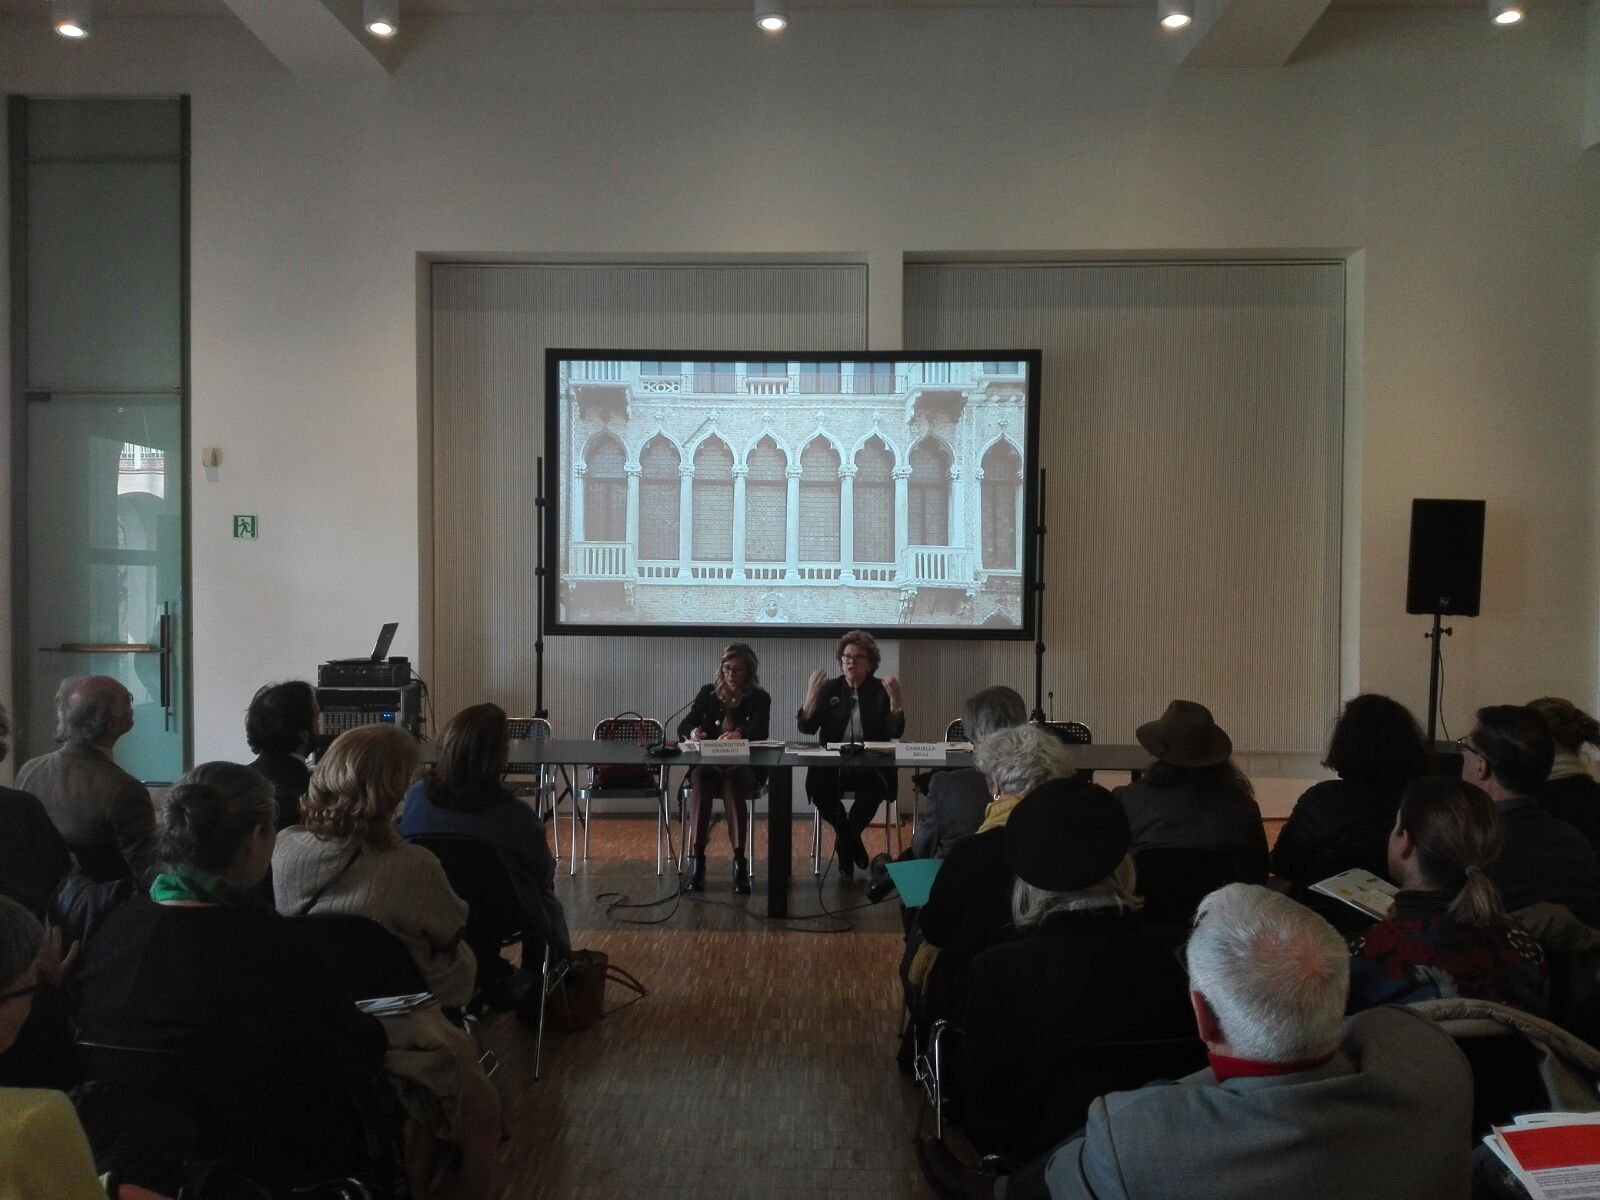 Presentazione programma Fondazione Musei Civici Venezia 2018